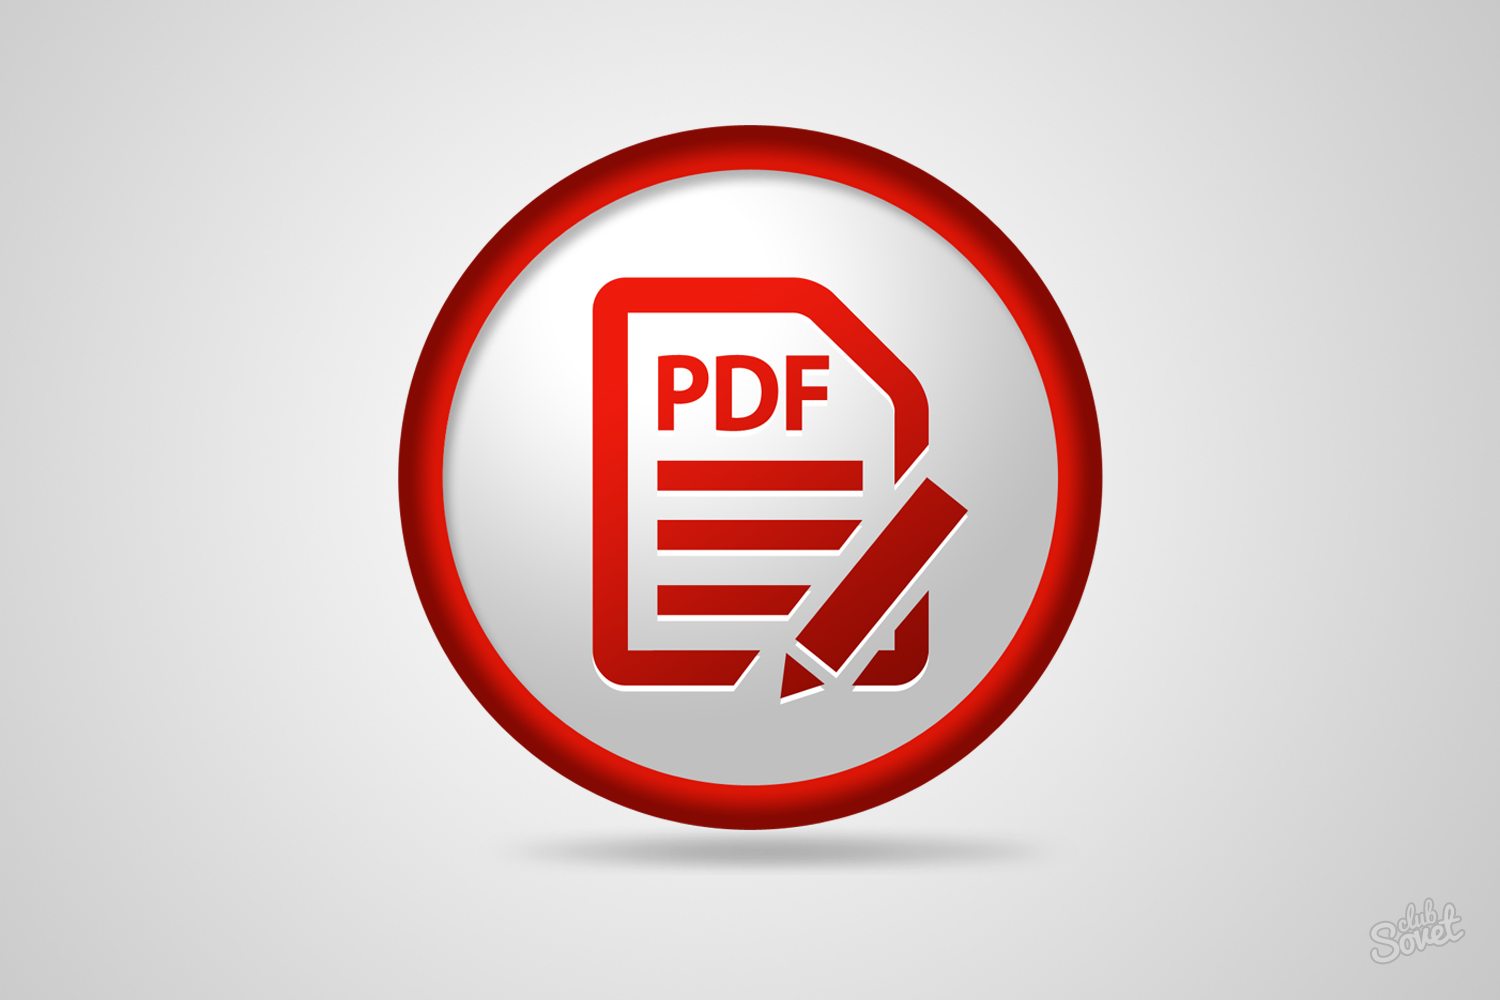 Come spremere il file PDF